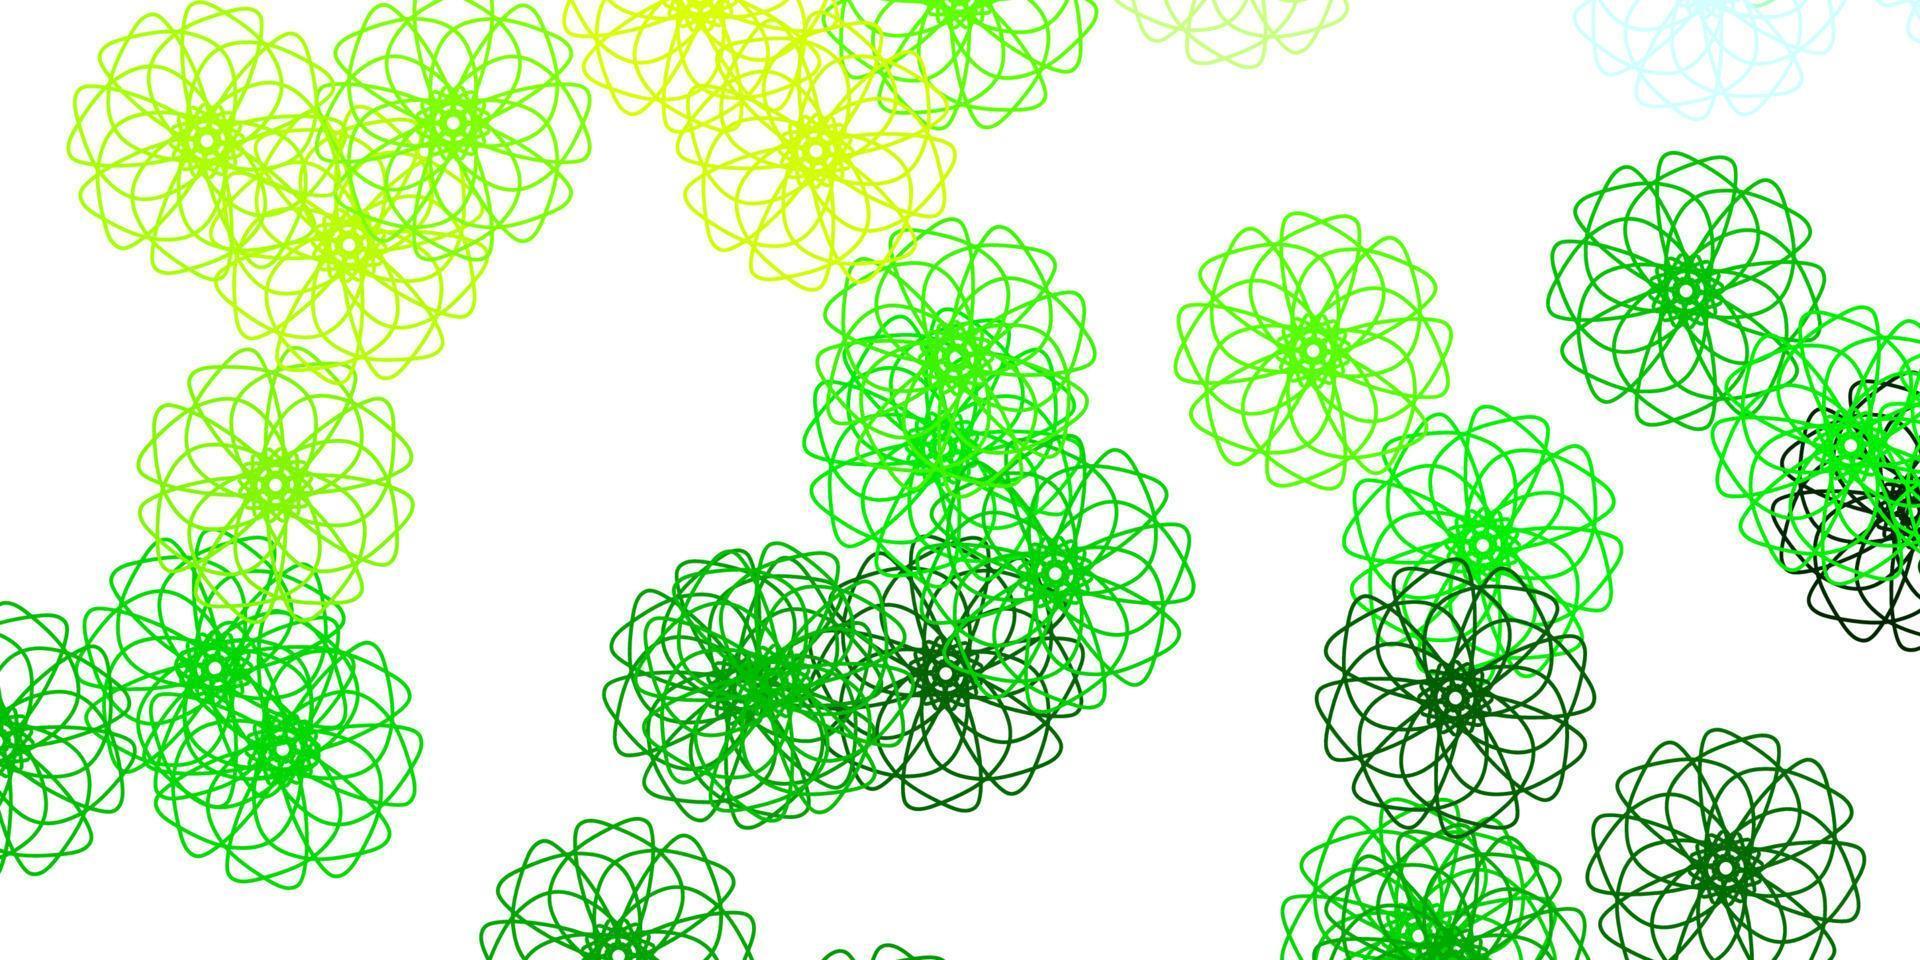 lichtgroen, geel vector doodle sjabloon met bloemen.